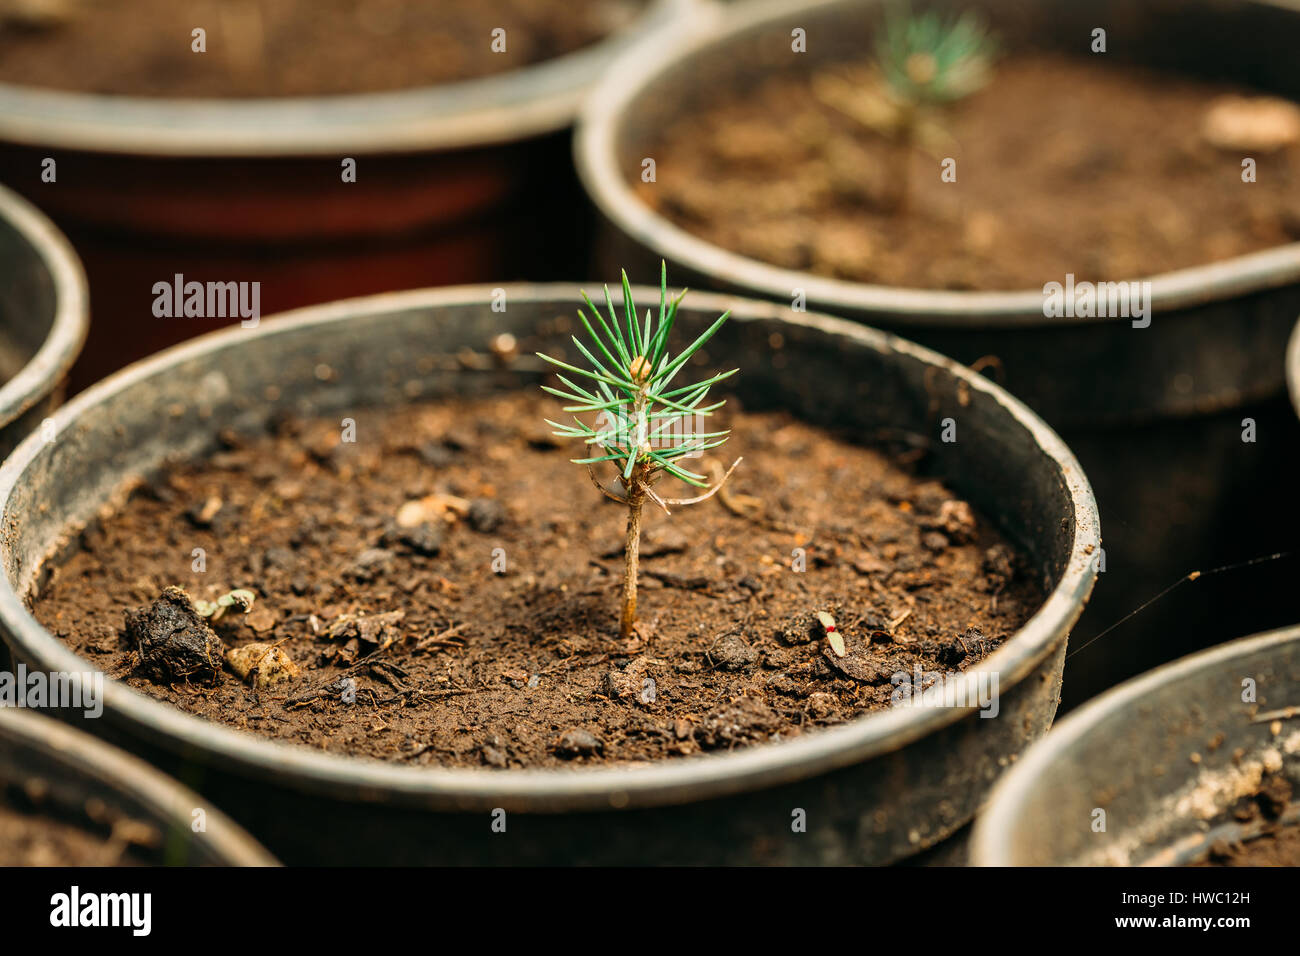 Kleine grüne Sprossen Cedar Tree Pflanze mit Blatt, Blätter wachsen aus dem Boden im Topf im Gewächshaus oder Gewächshaus. Frühling, Konzept des neuen Lebens. Stockfoto